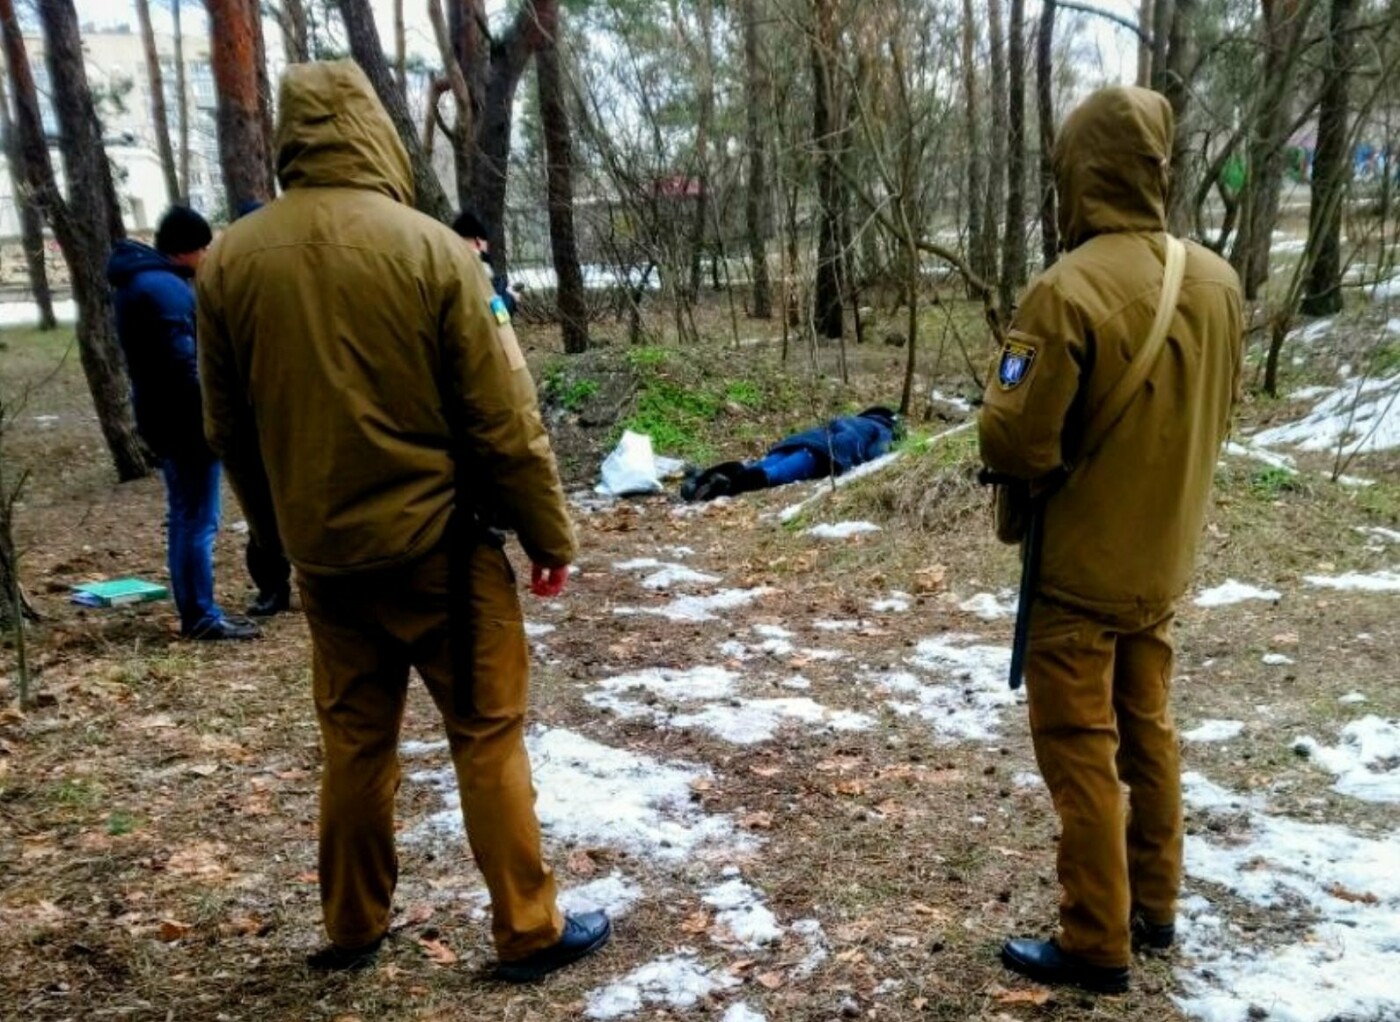 убитые женщины украины фото